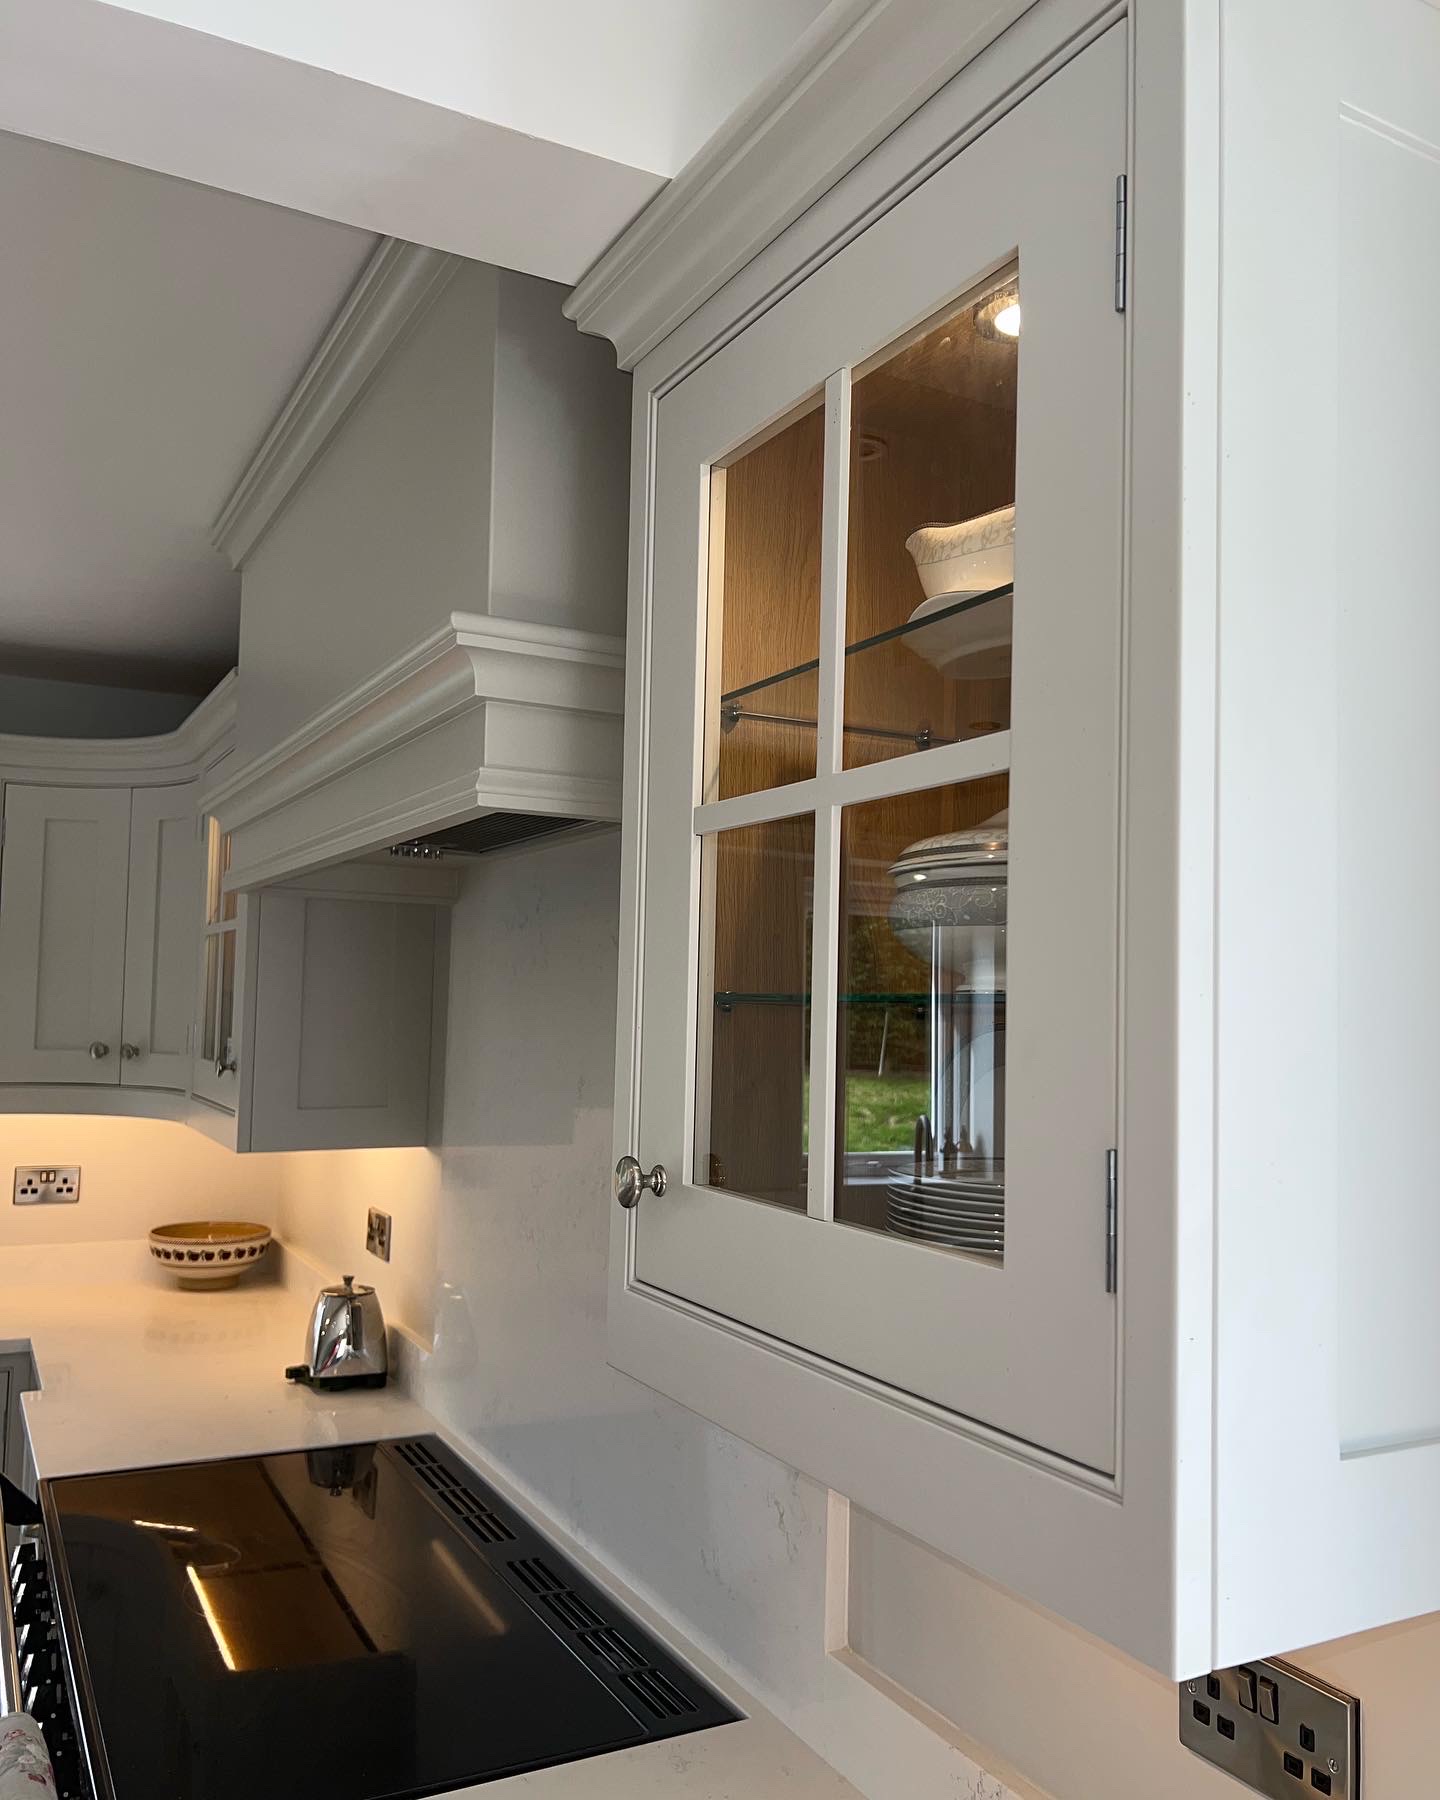 Bespoke Kitchen cabinet installation and design in Crossgar